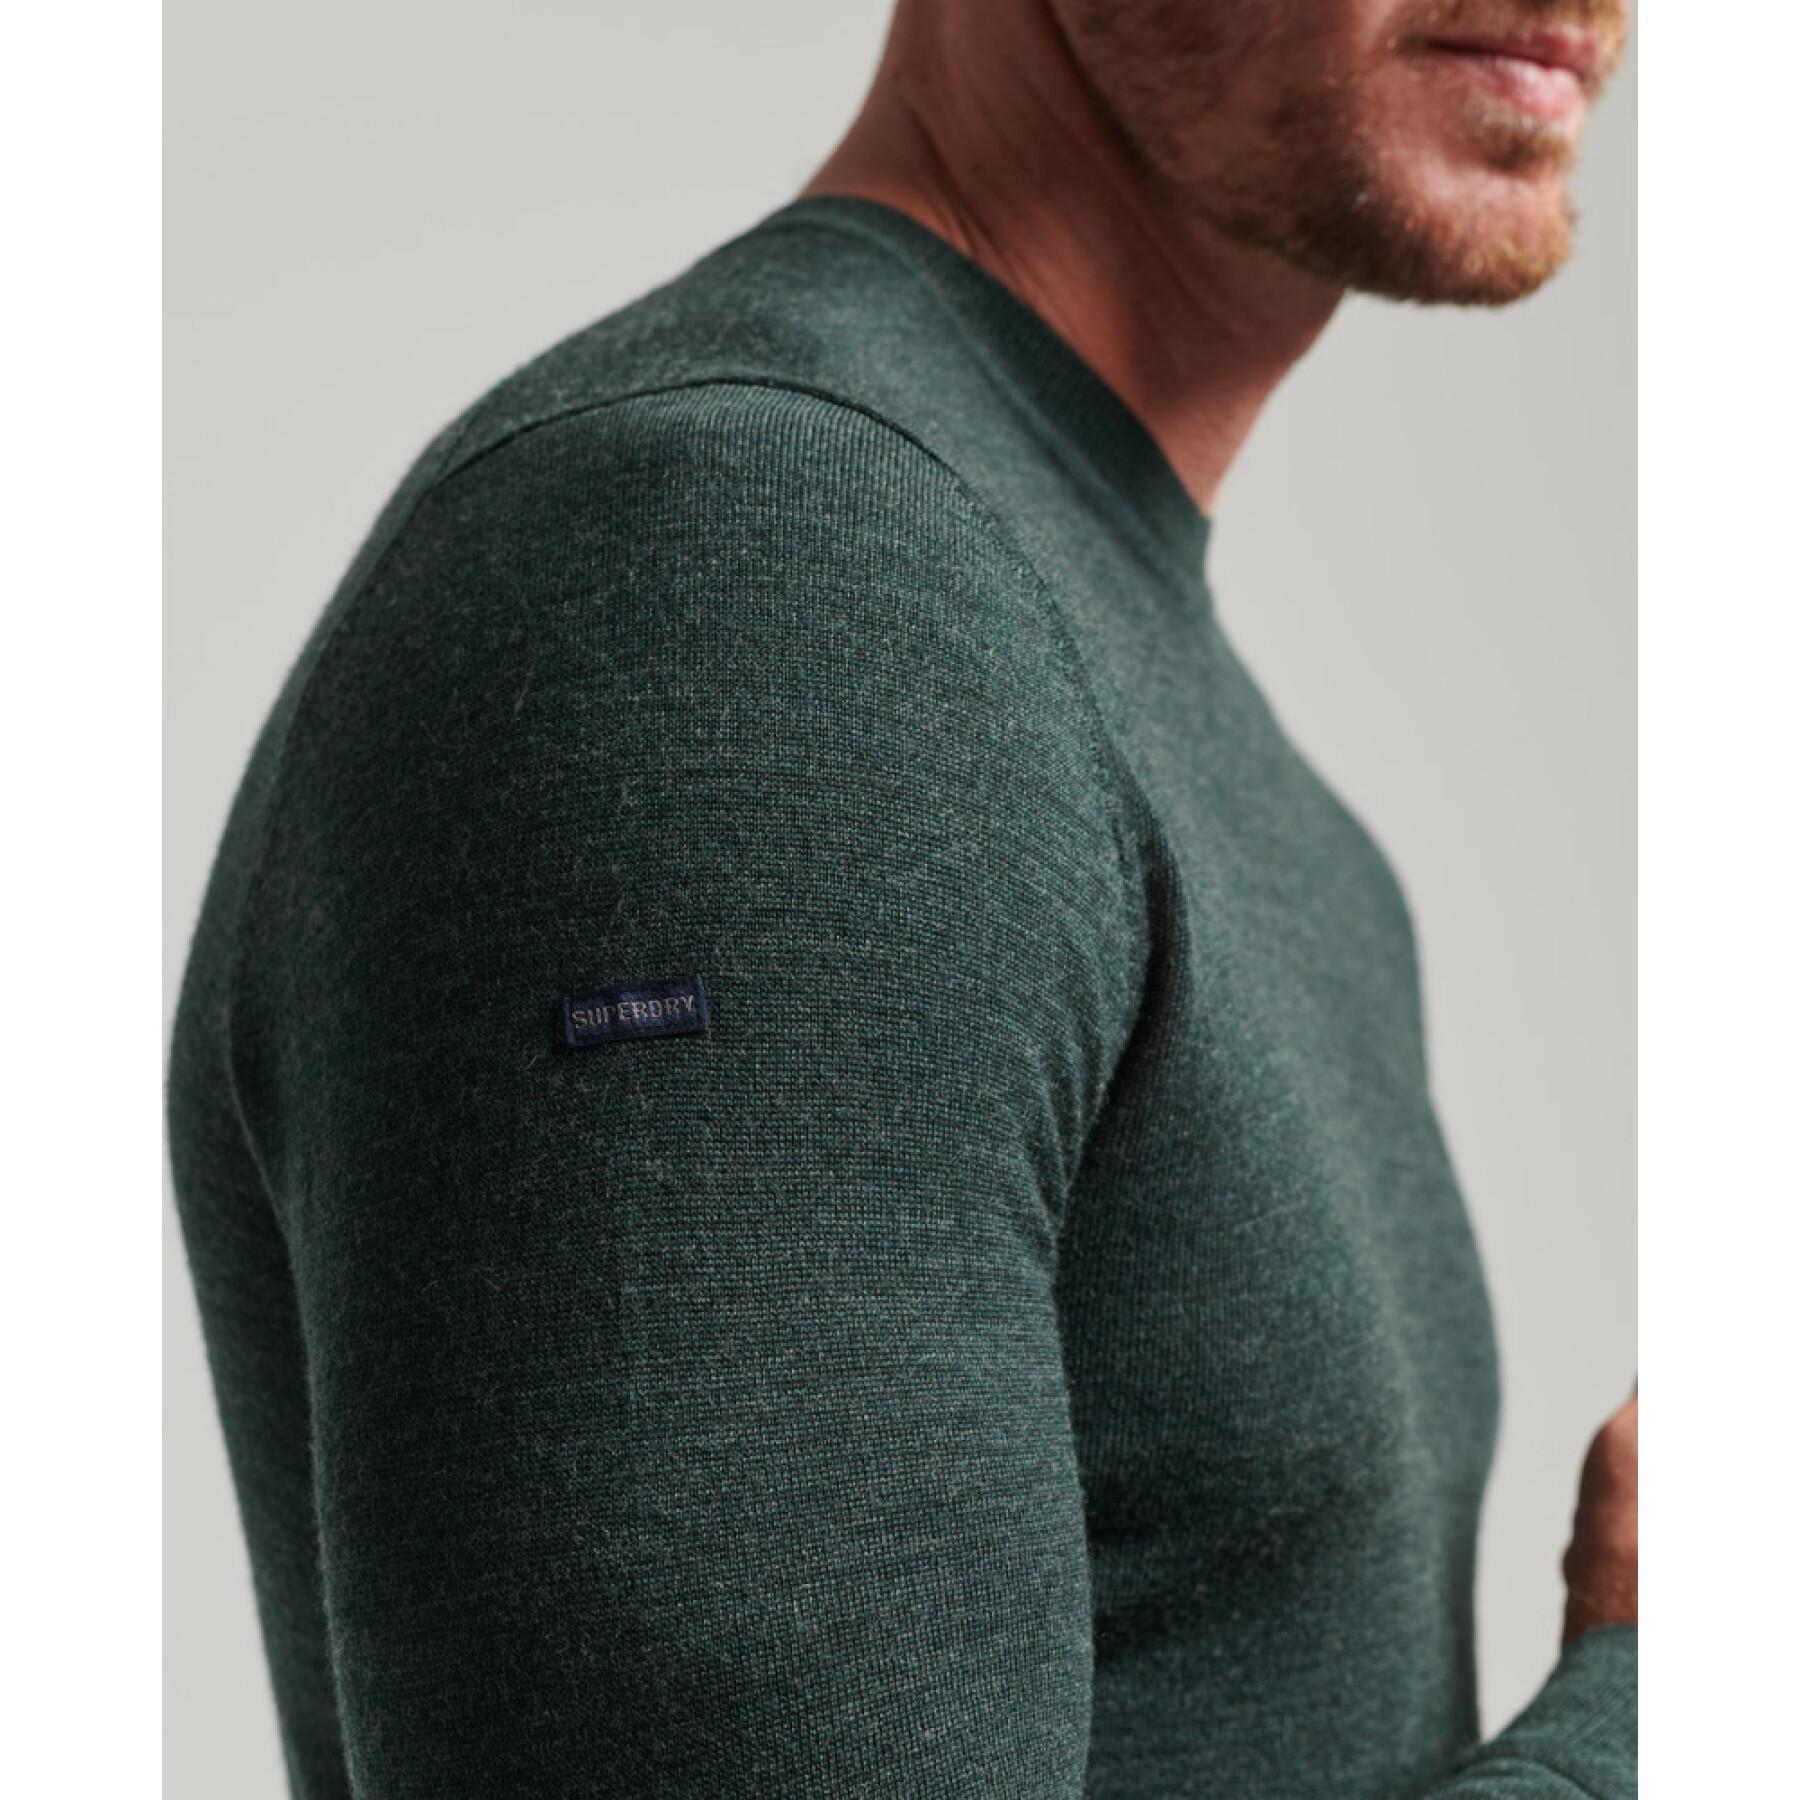 Jersey de lana merina con cuello redondo Superdry